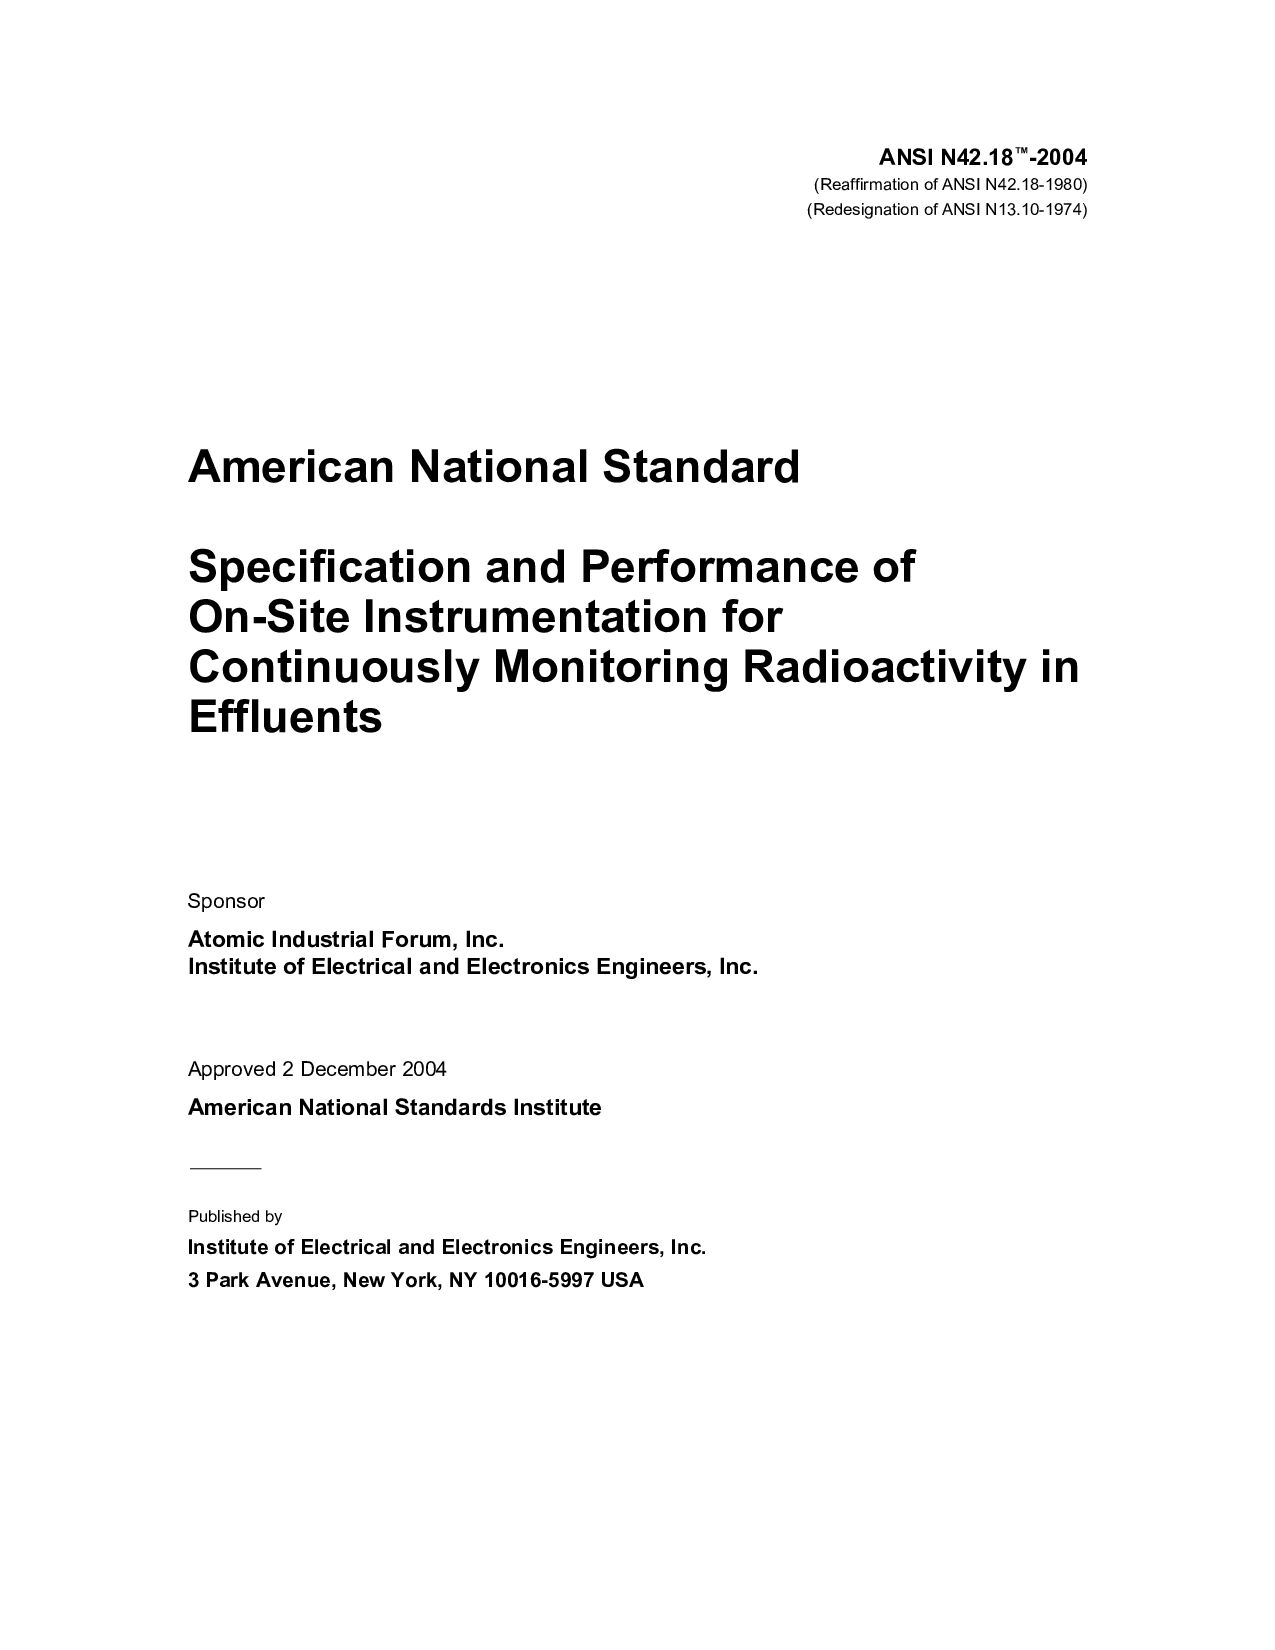 IEEE/ANSI N 42.18-2004